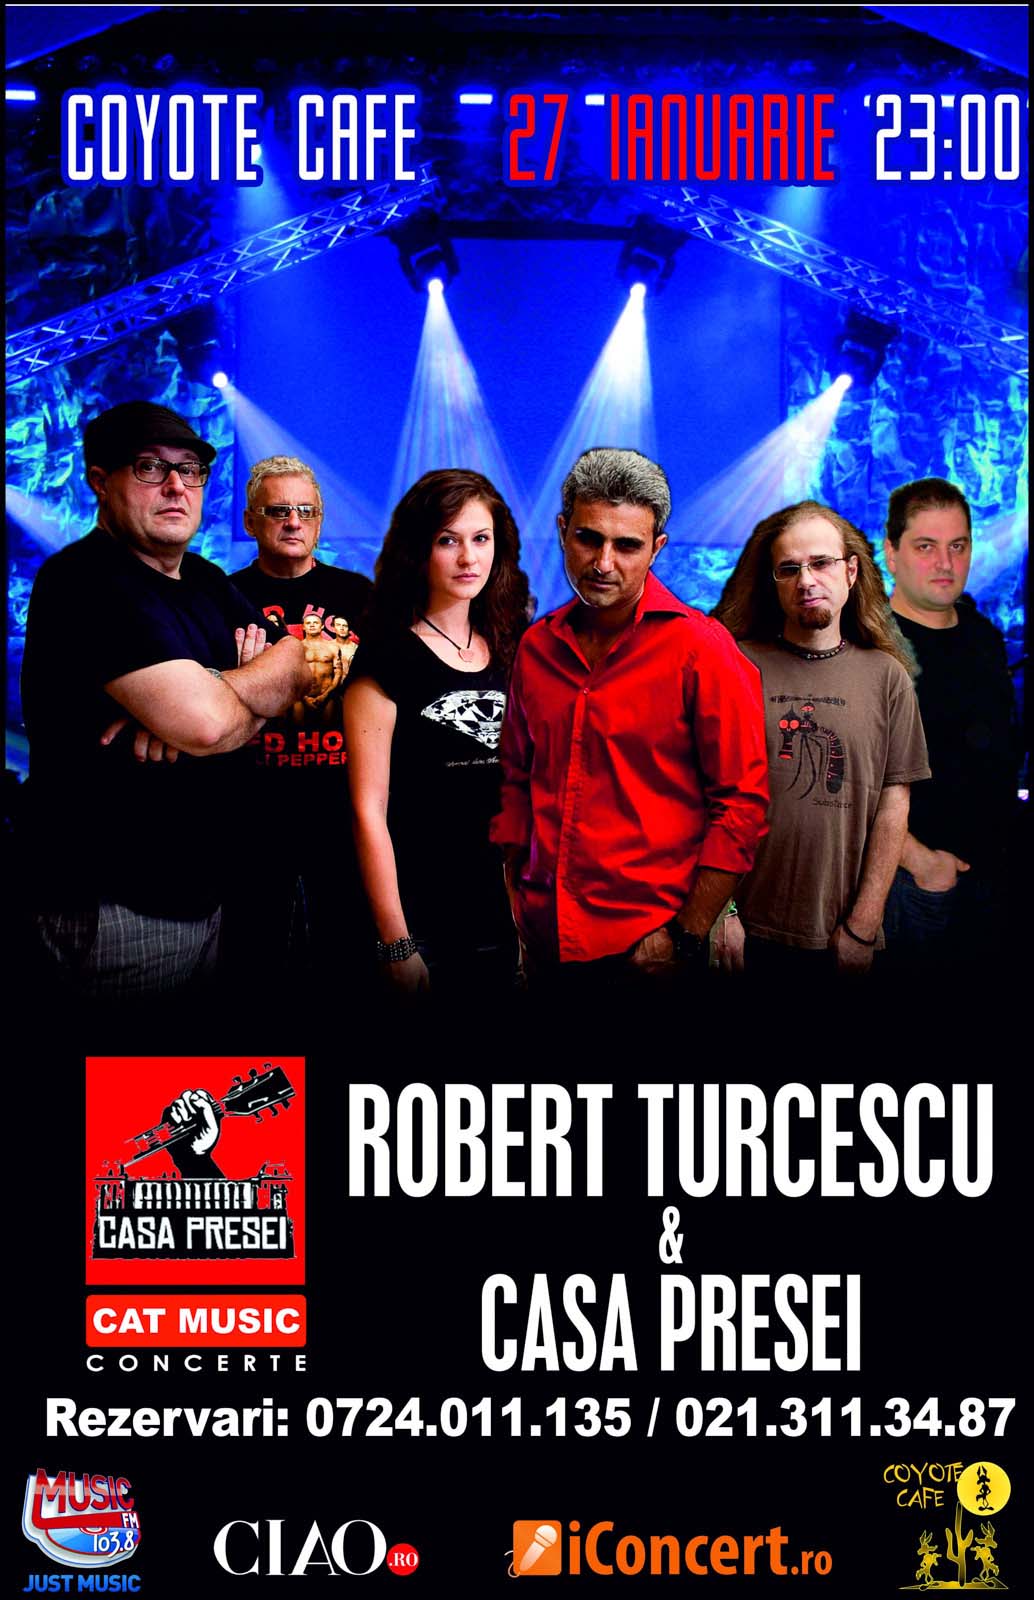 Concert Casa presei si Robert Turcescu